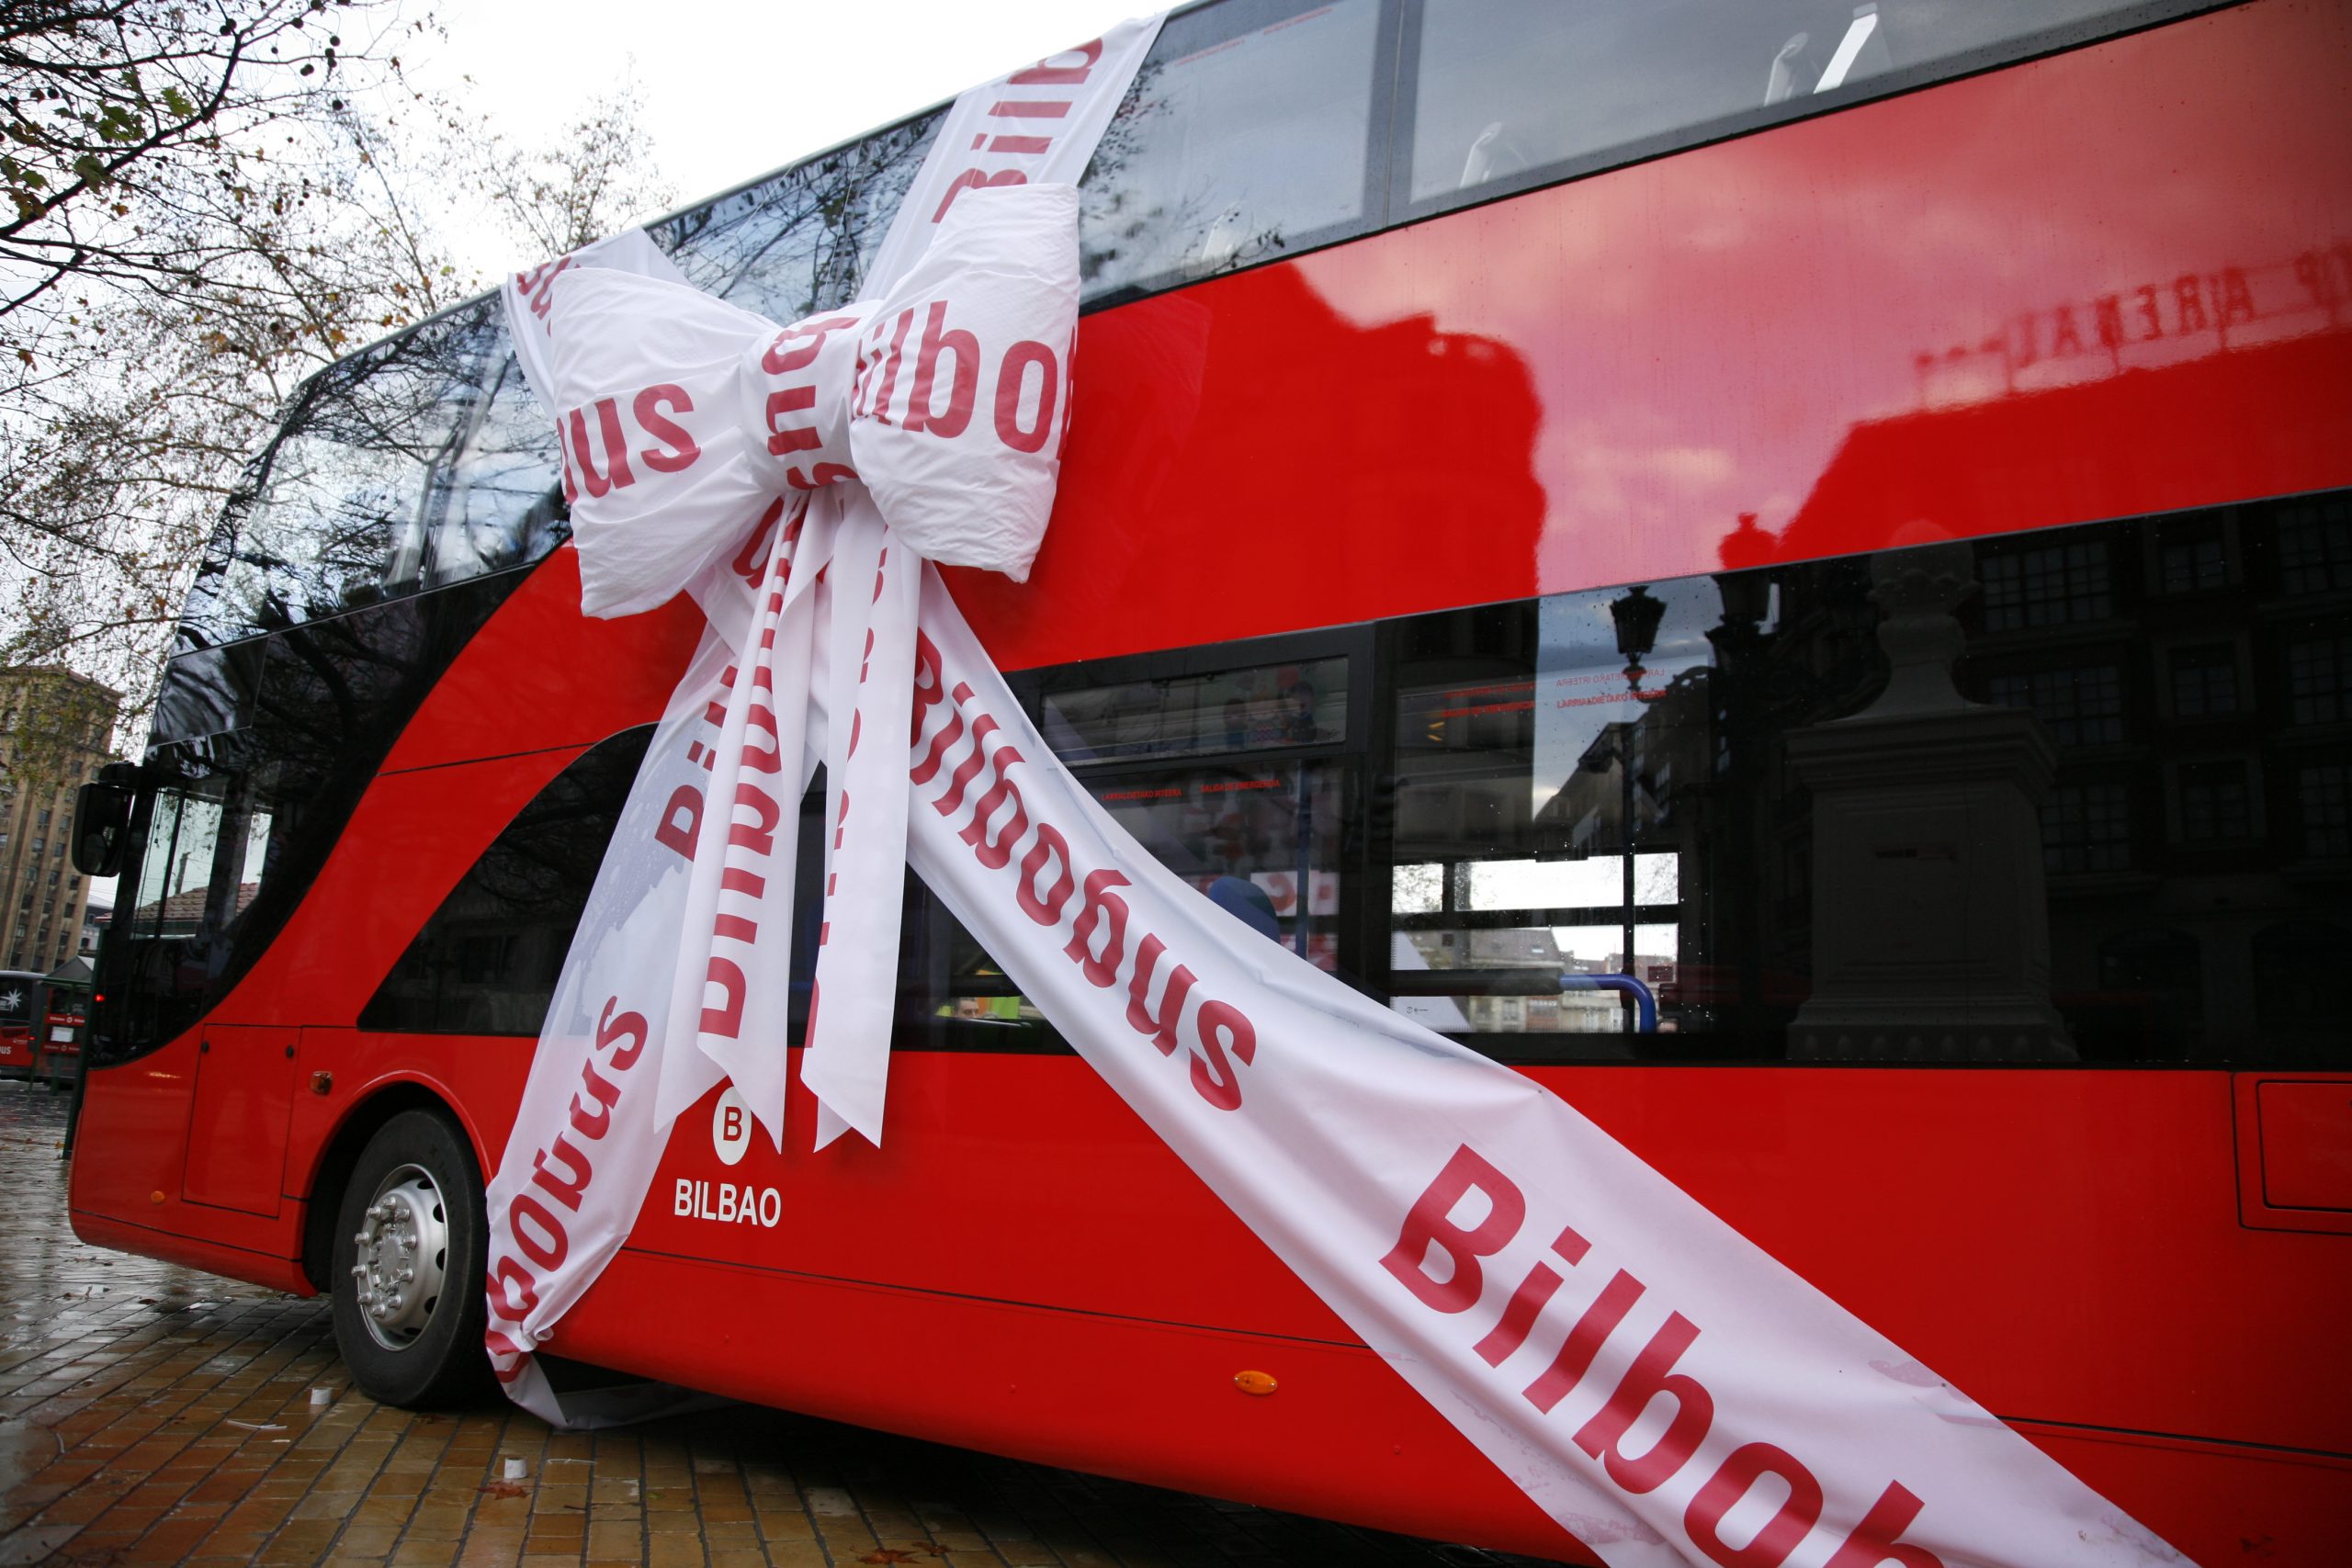 Acciones de marketing y publicidad exterior Bilbao Bizkaia _ Autobus envuelto regalo rojo_01